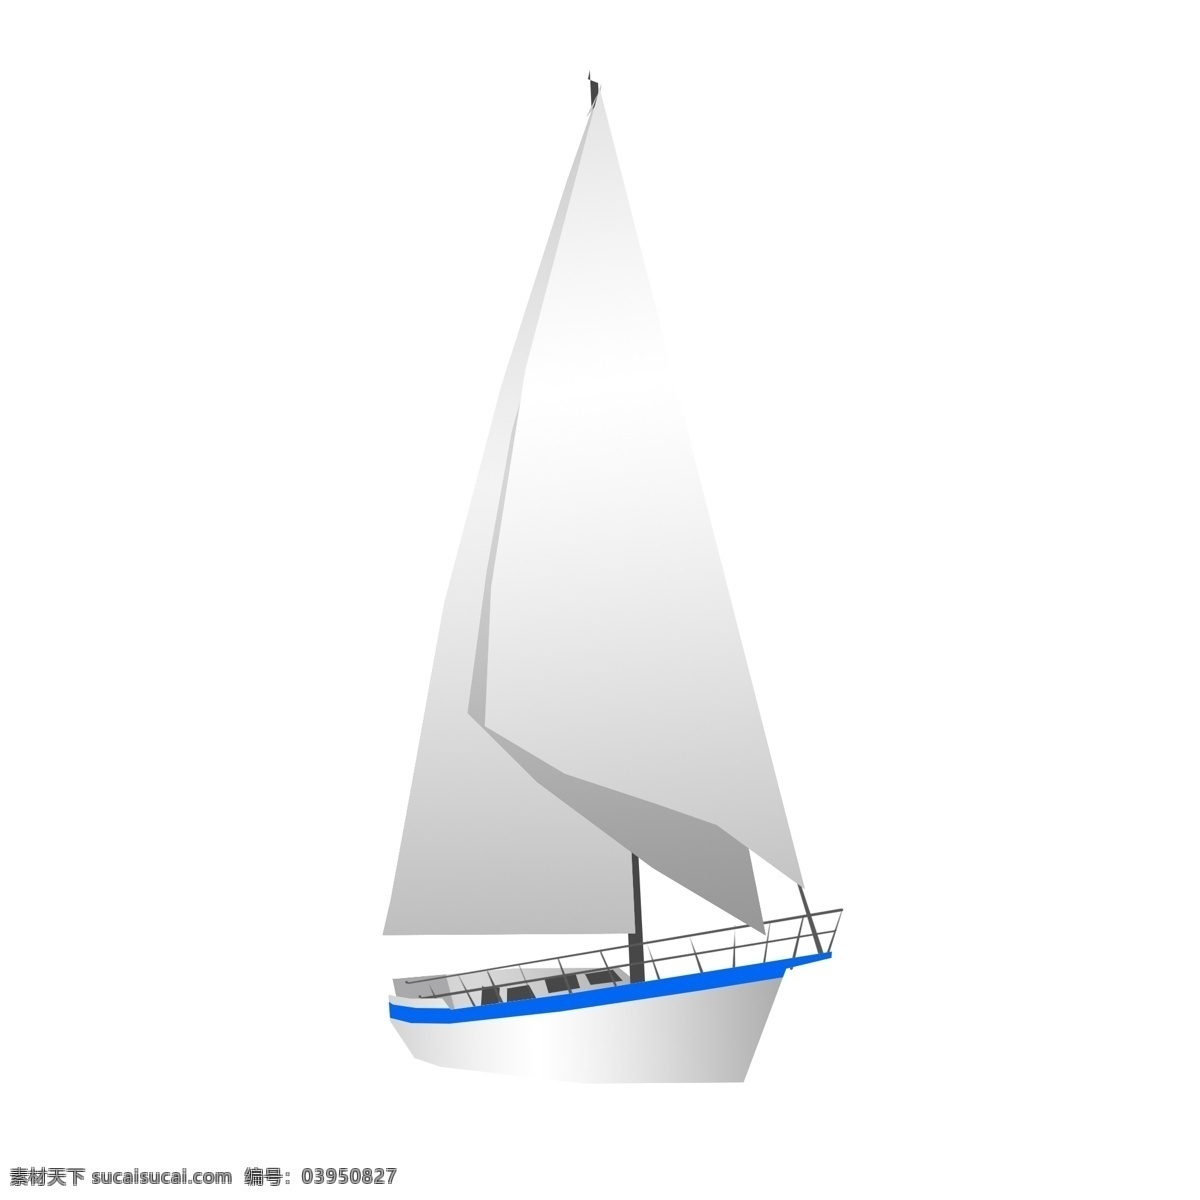 海上 白色 帆船 插画 企业文化宣传 海上帆船 夏日旅游 海边 航海 白色帆船插画 蓝色船边 帆船围栏